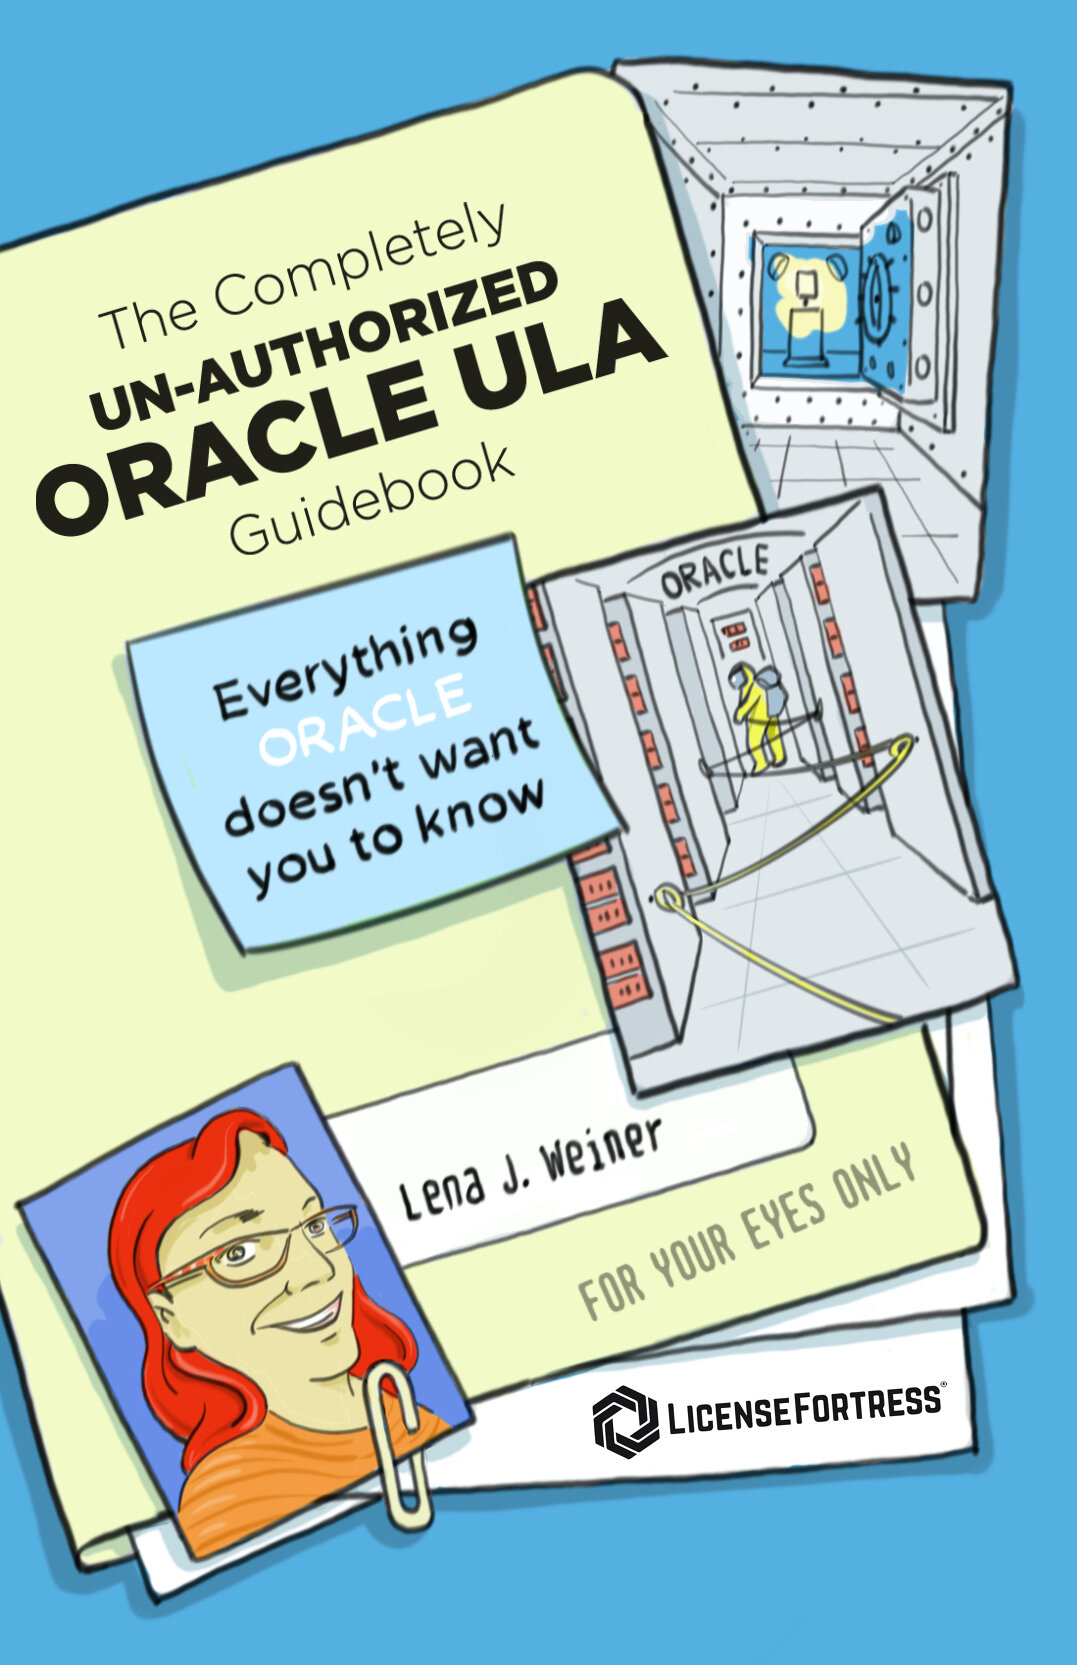 Oracle ULA Guidebook